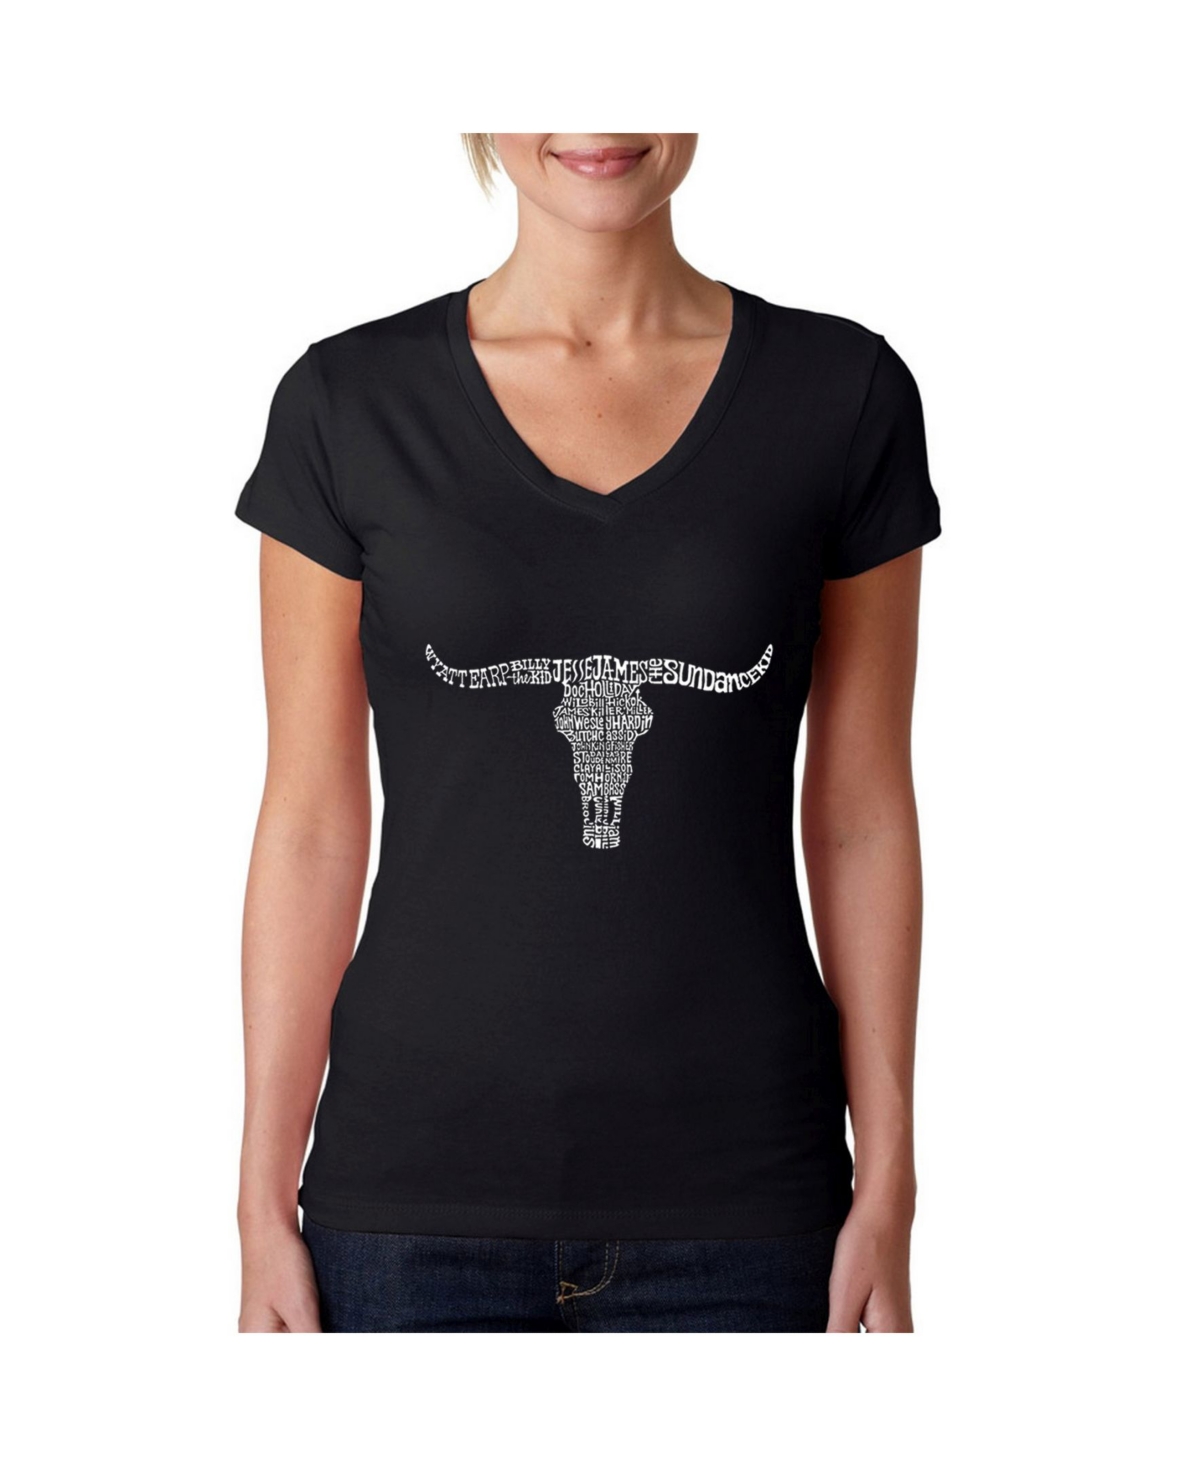 Women's Word Art V-Neck T-Shirt - Names of Legendary Outlaws - Black